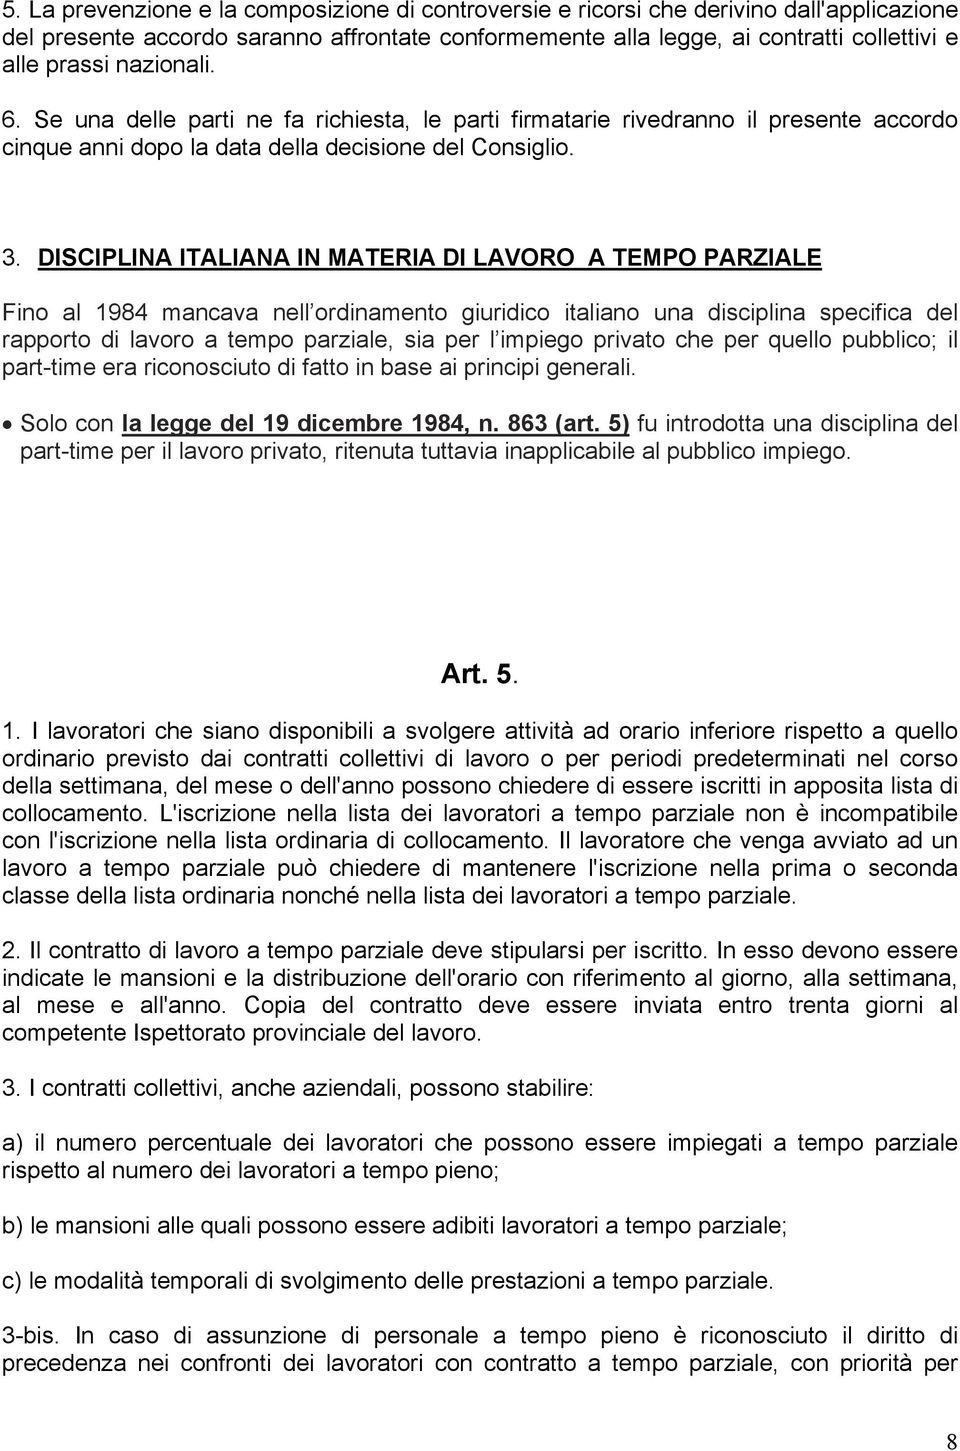 DISCIPLINA ITALIANA IN MATERIA DI LAVORO A TEMPO PARZIALE Fino al 1984 mancava nell ordinamento giuridico italiano una disciplina specifica del rapporto di lavoro a tempo parziale, sia per l impiego